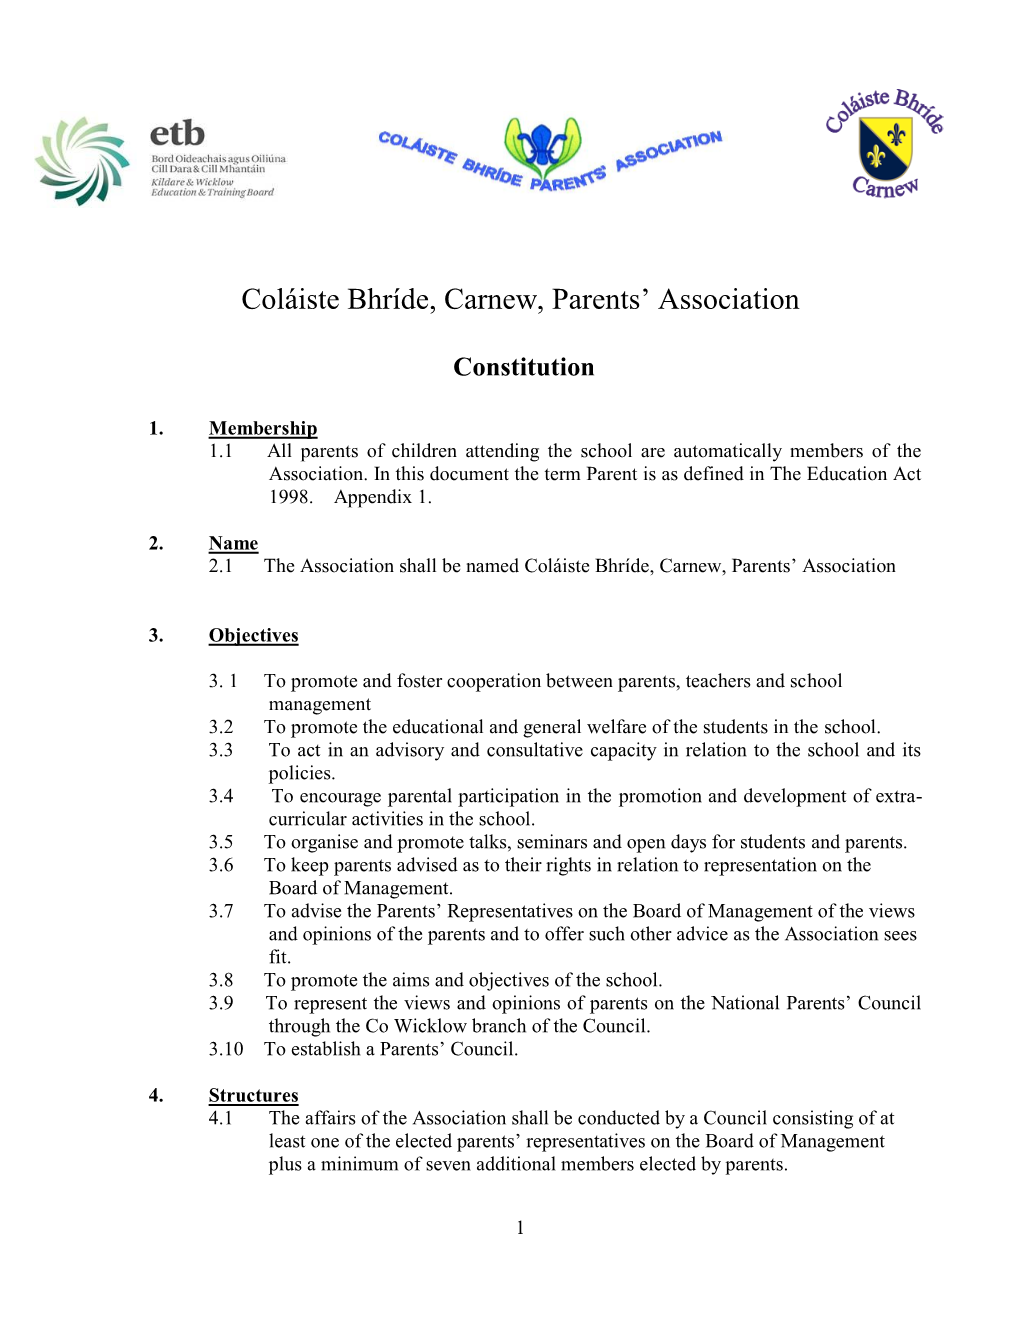 Parents Association Constitution